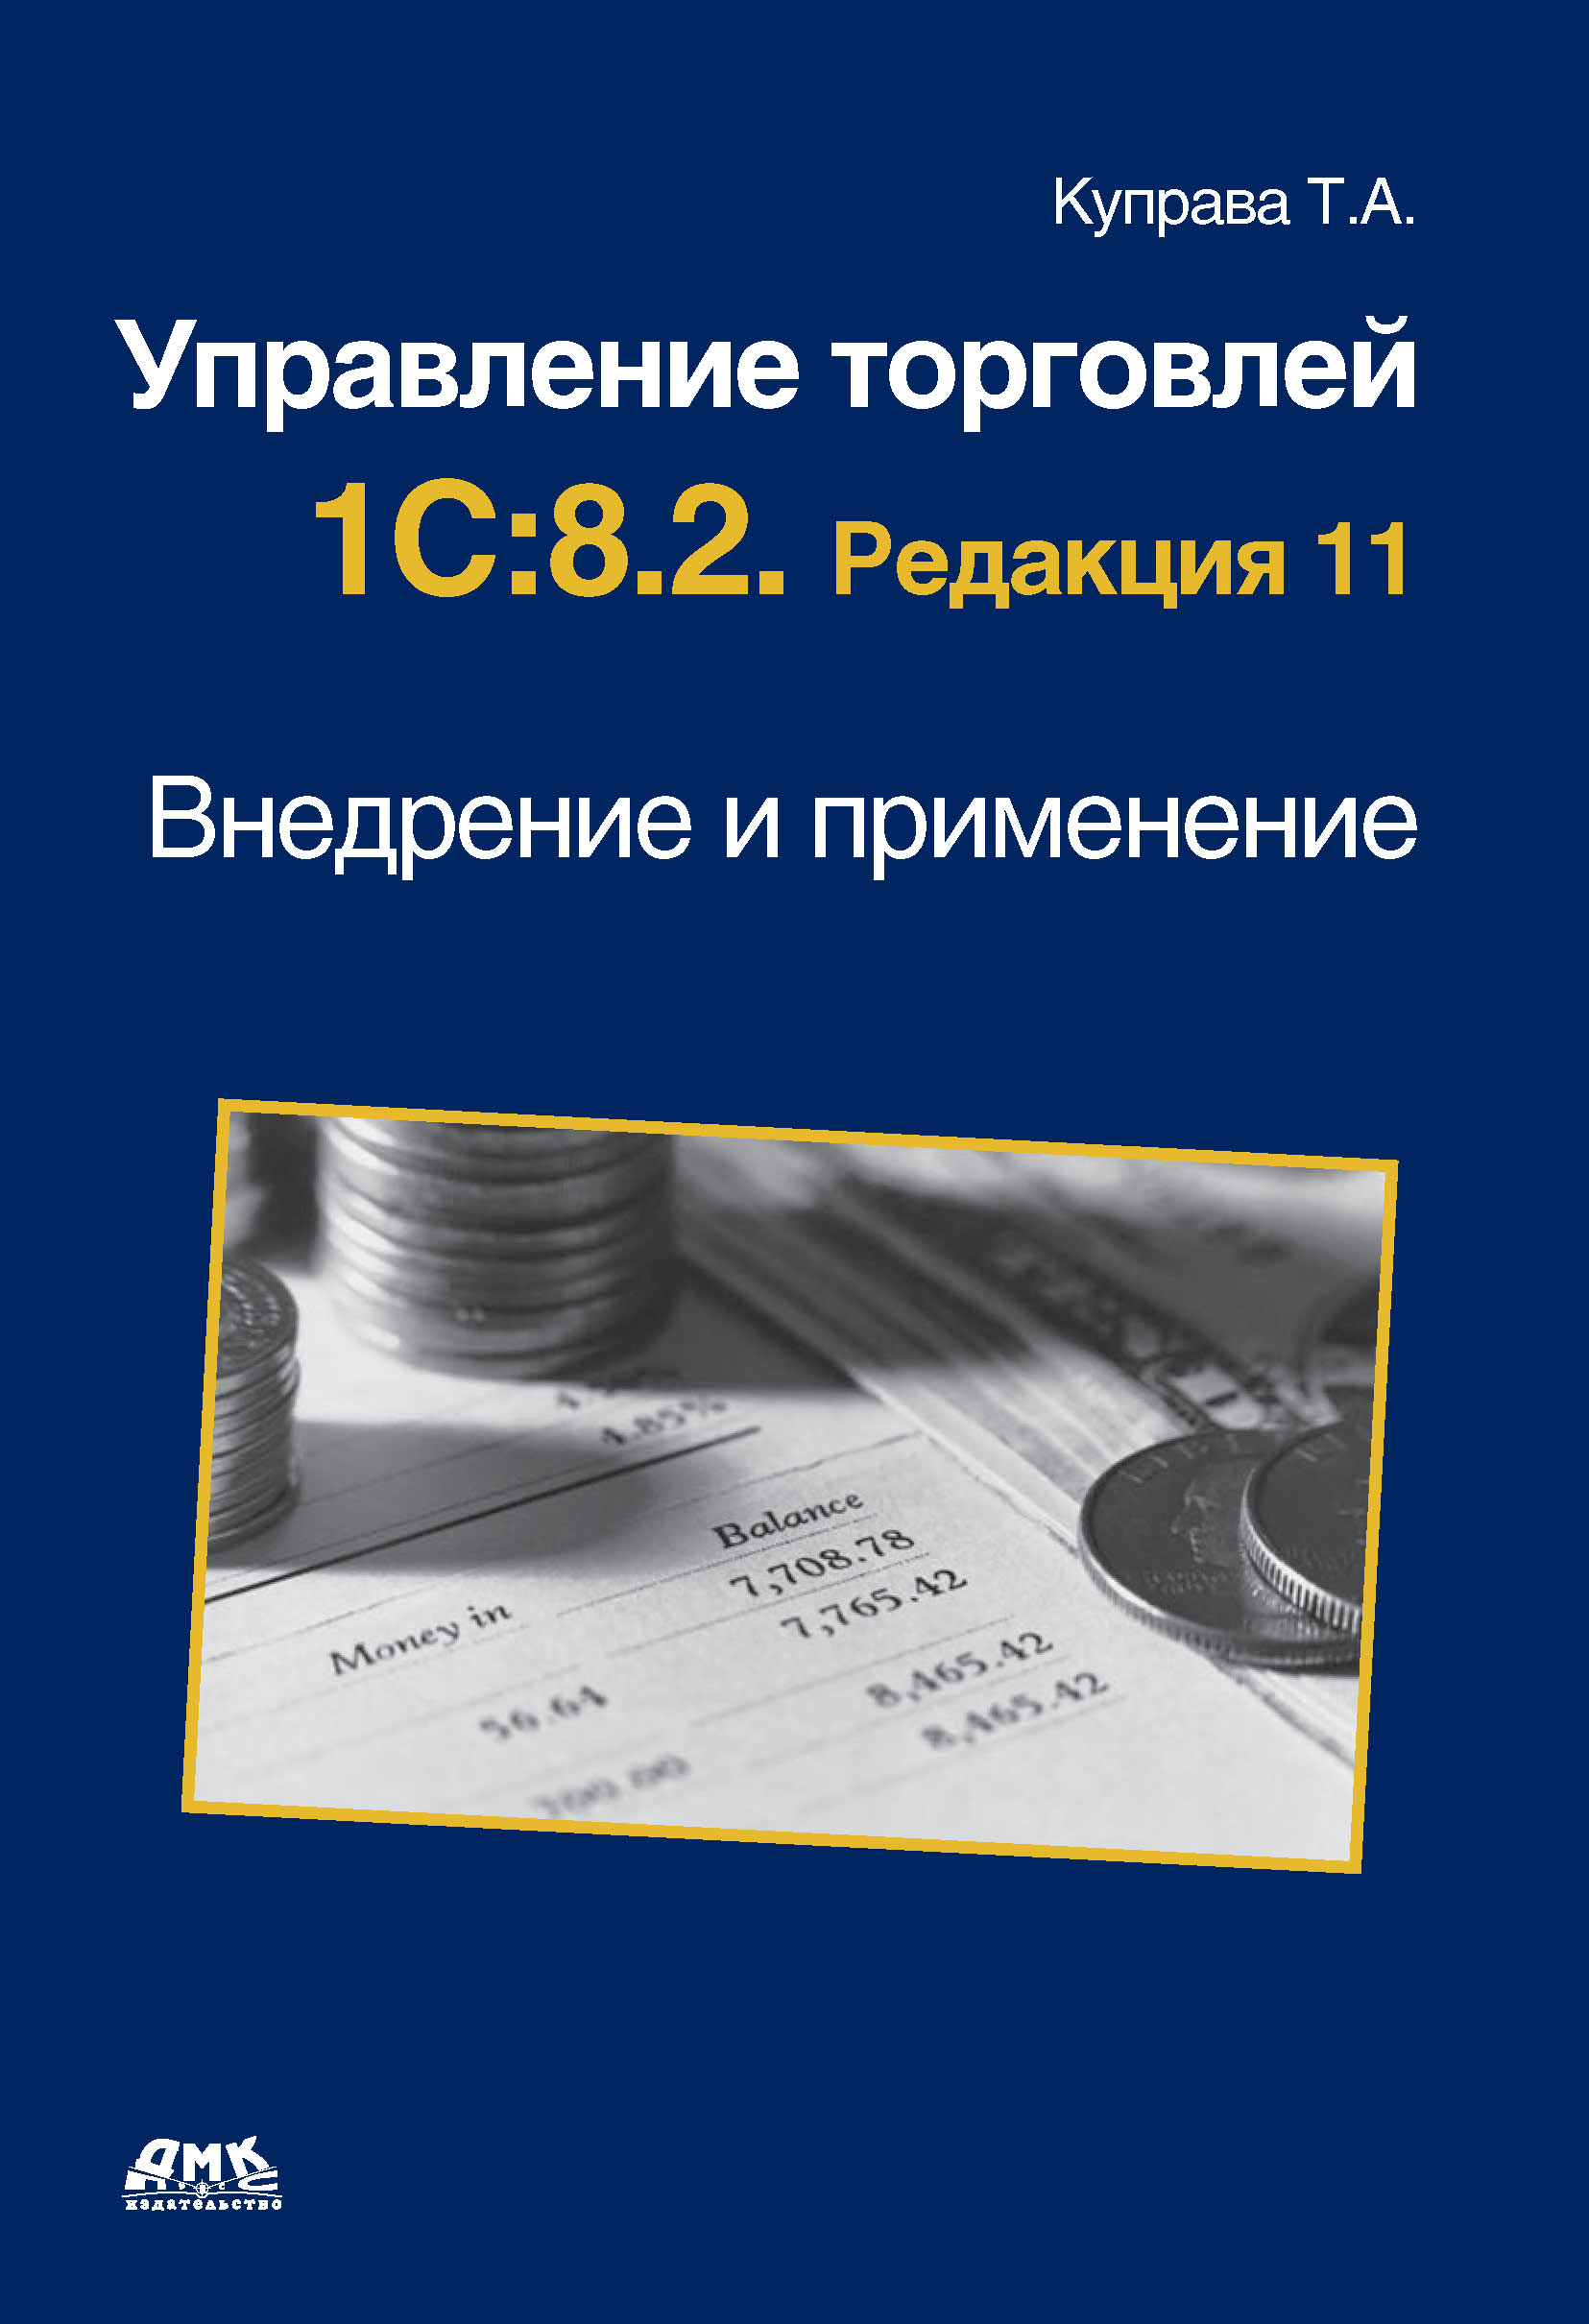 Т. А. Куправа - «Управление торговлей 1С.8.2. Редакция 11. Внедрение и применение»